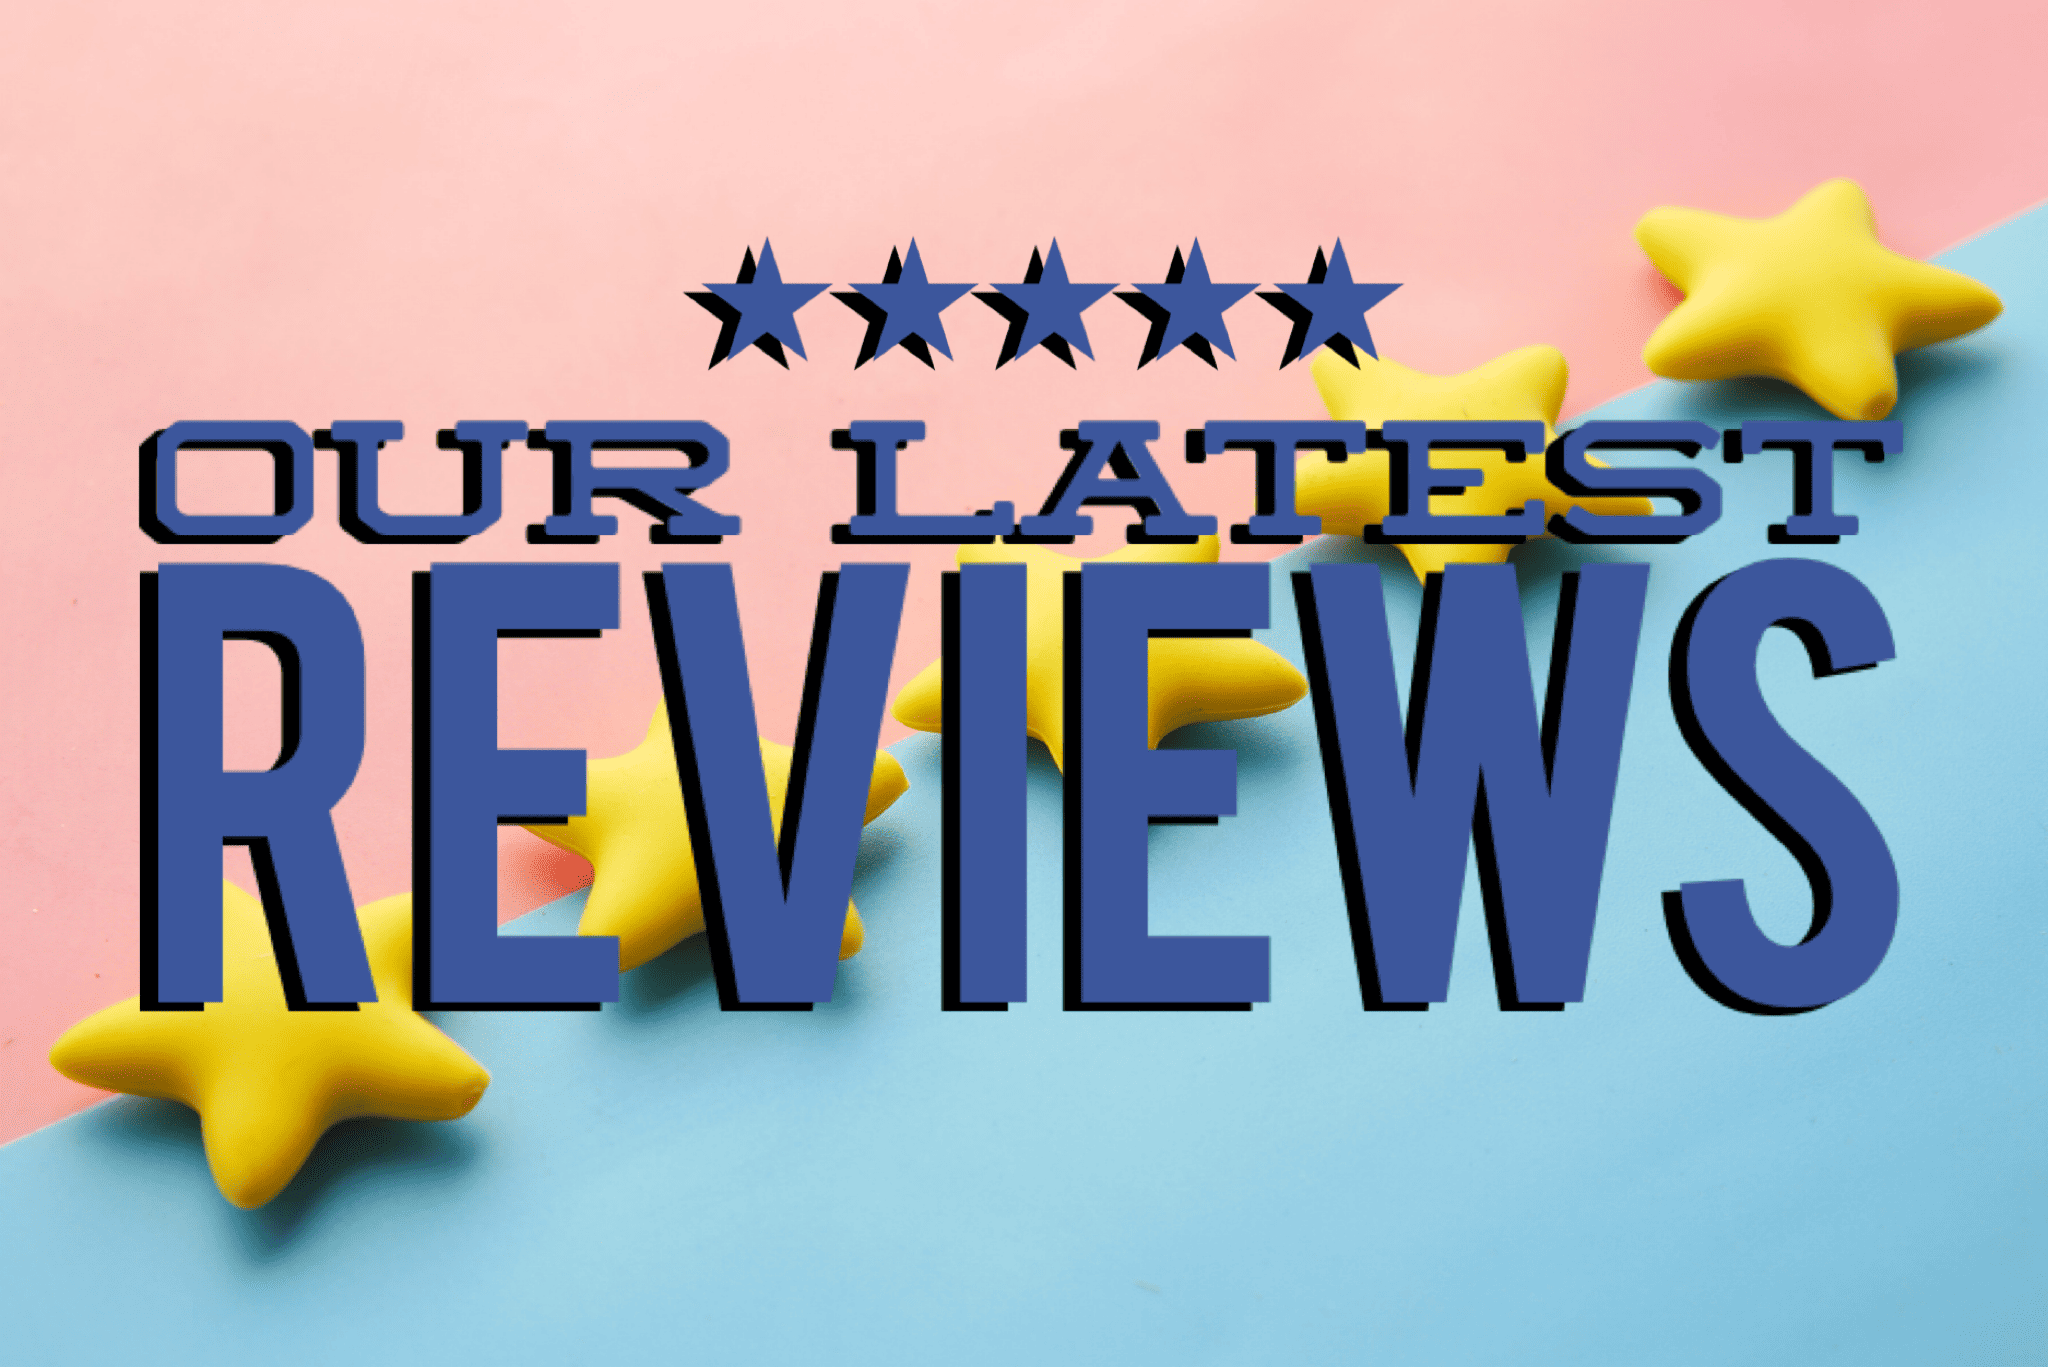 servicem8 reviews